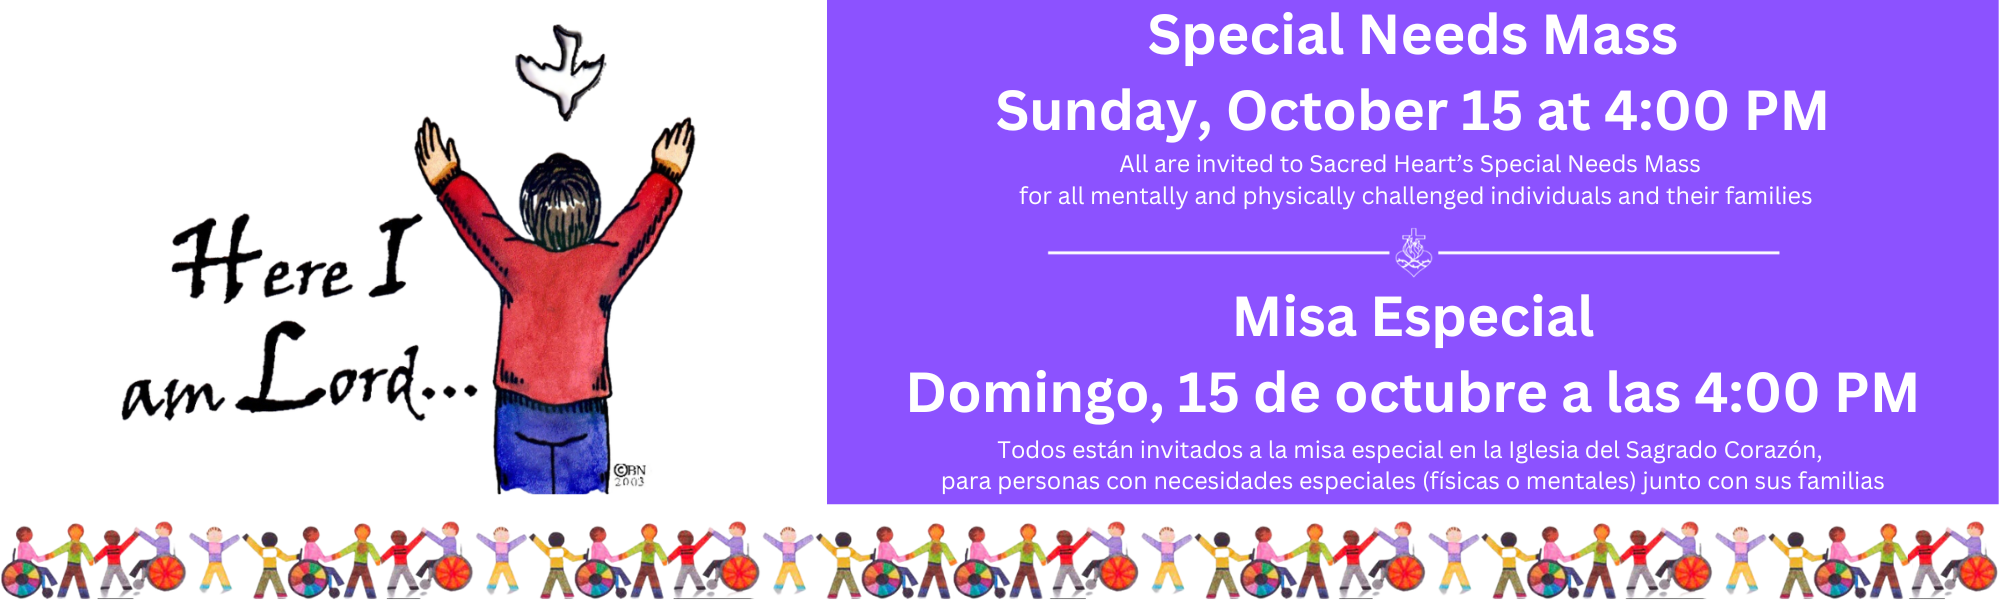 Special Needs Mass Sun Oct 15